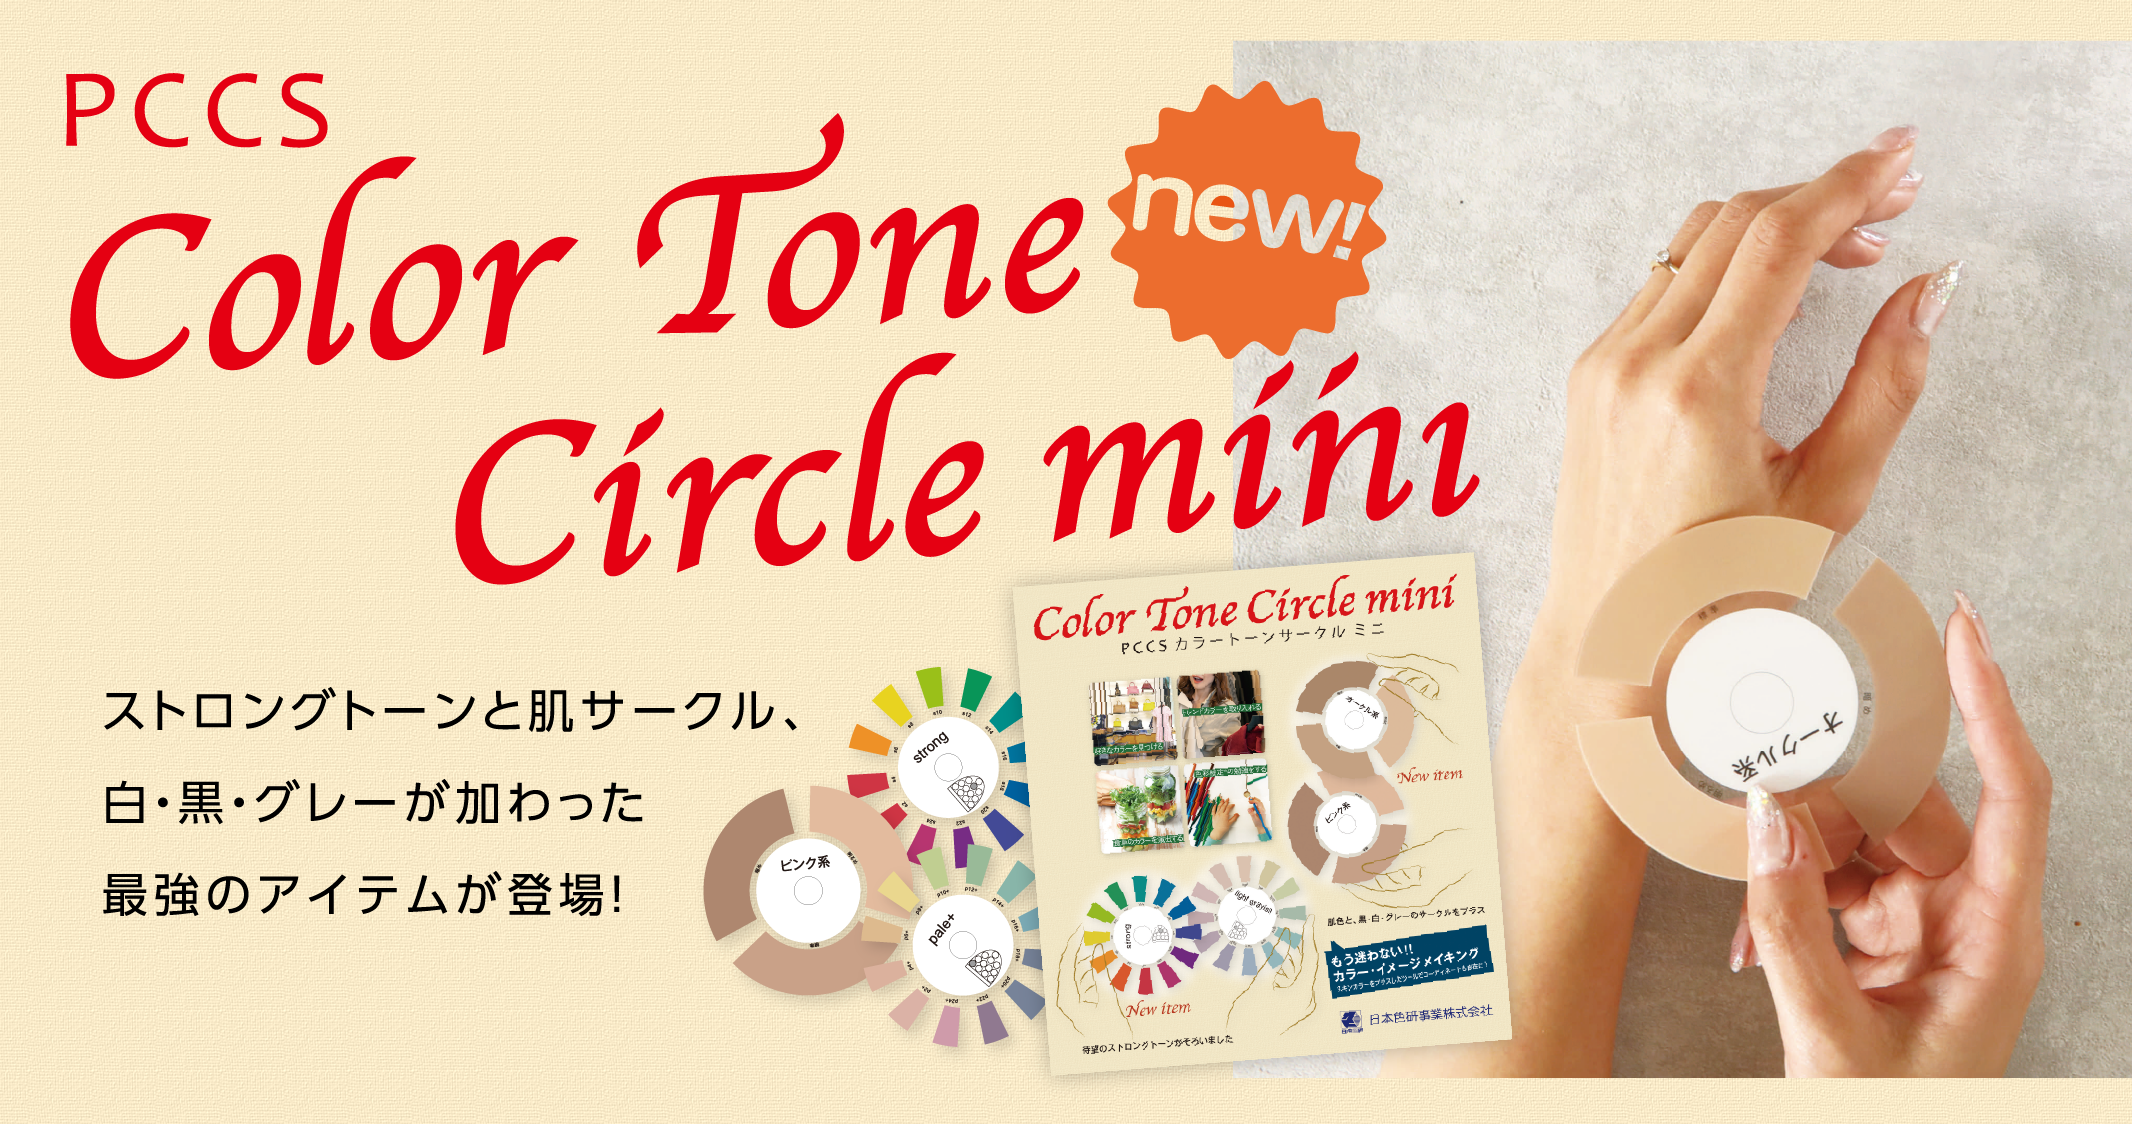 PCCS Color Tone Circle mini